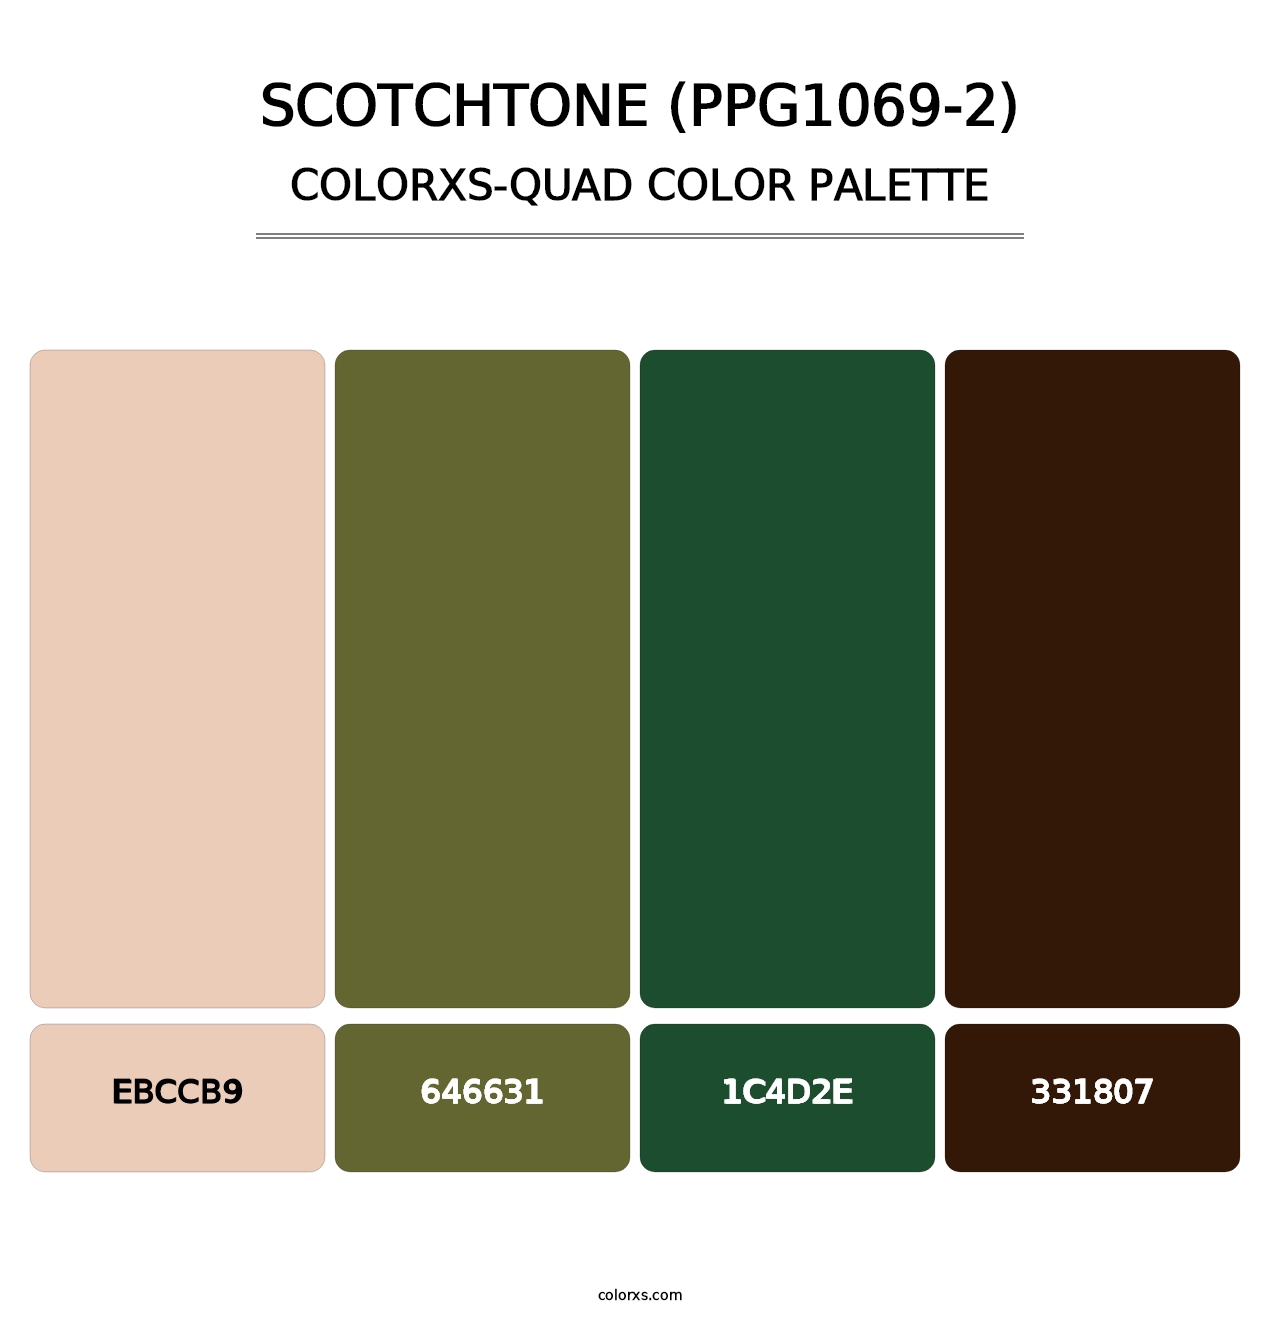 Scotchtone (PPG1069-2) - Colorxs Quad Palette